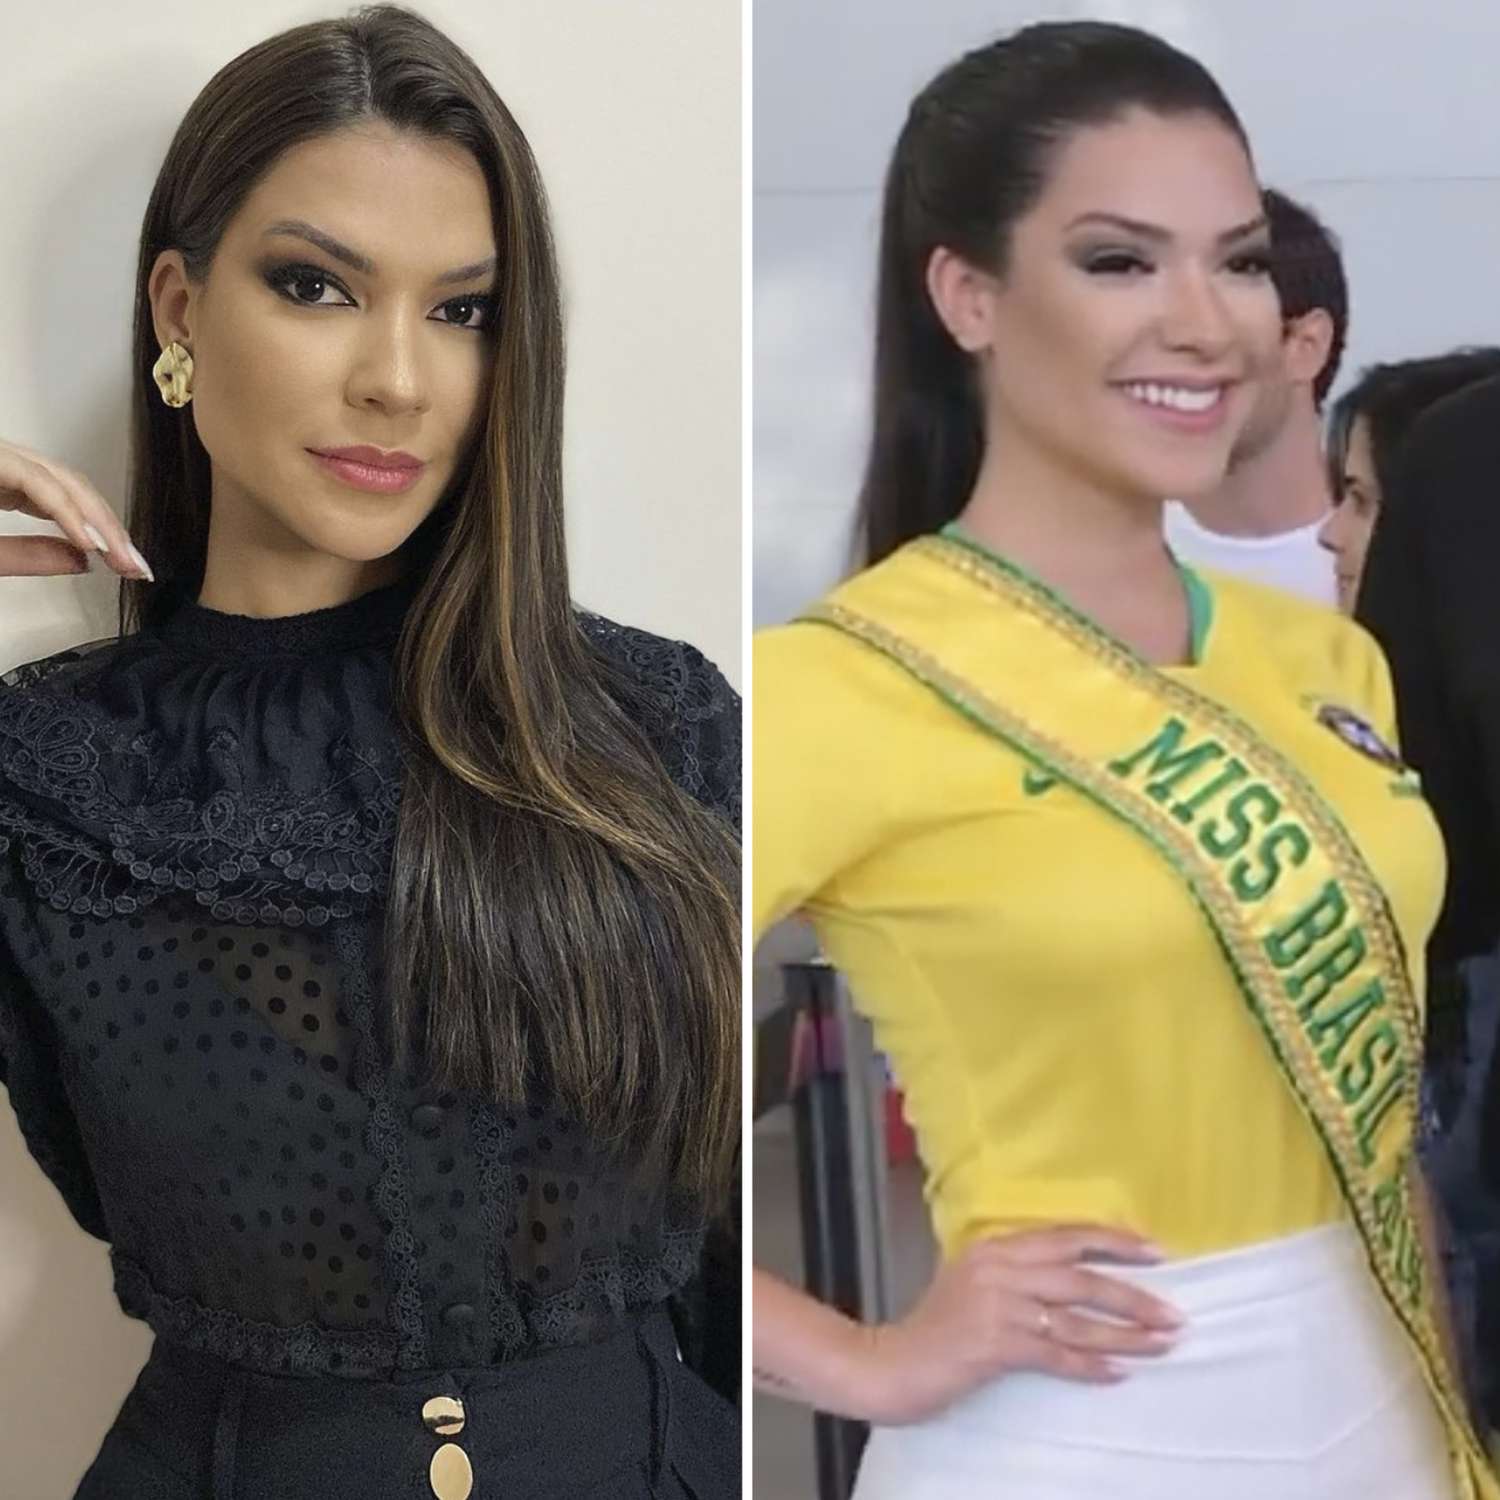 Gleycy Correia - Miss Brazil 2018